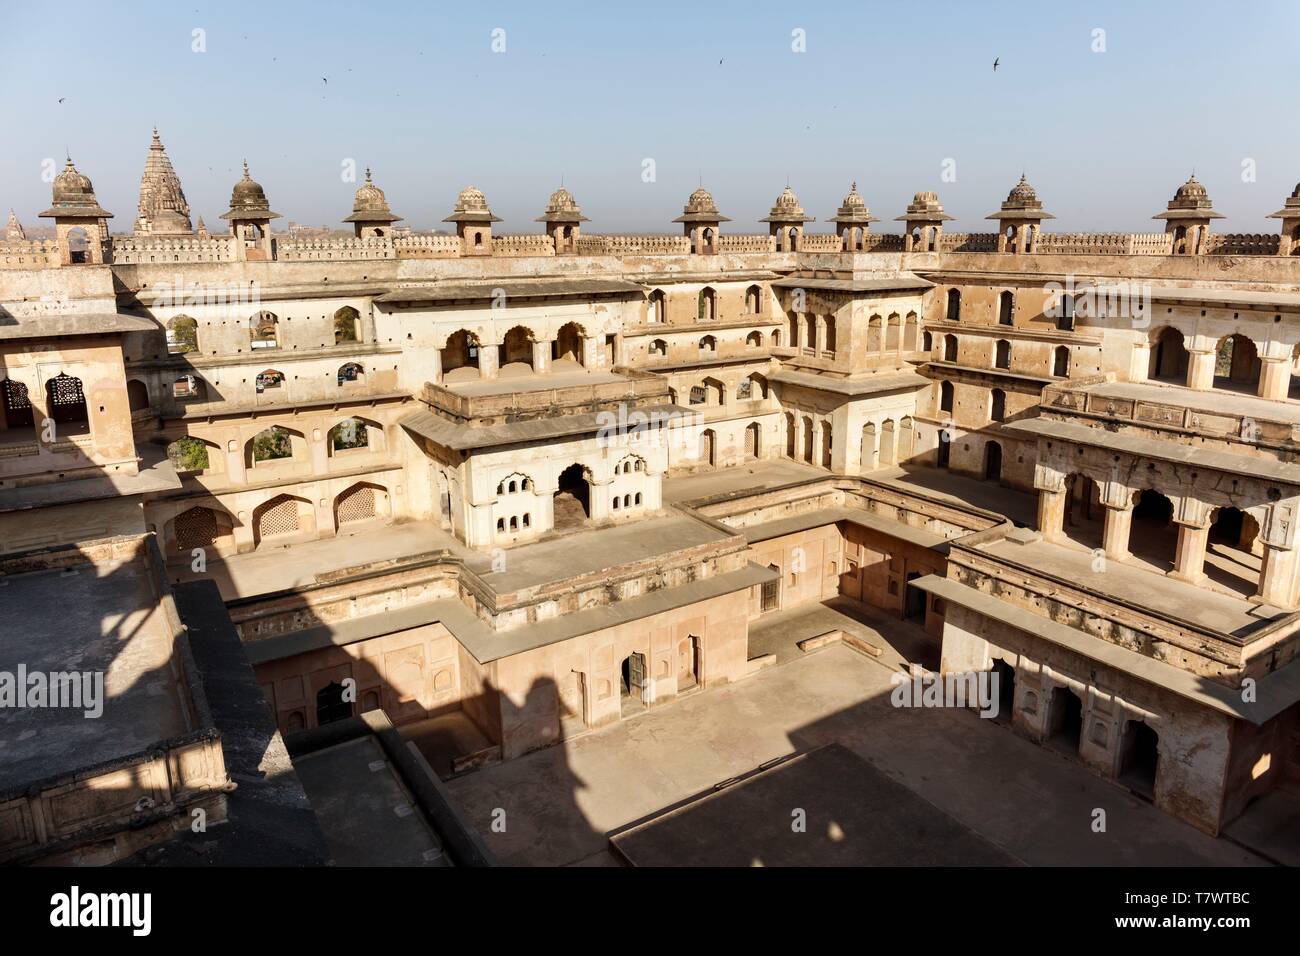 India, Madhya Pradesh, Orchha, Raja Mahal palace courtyard Stock Photo